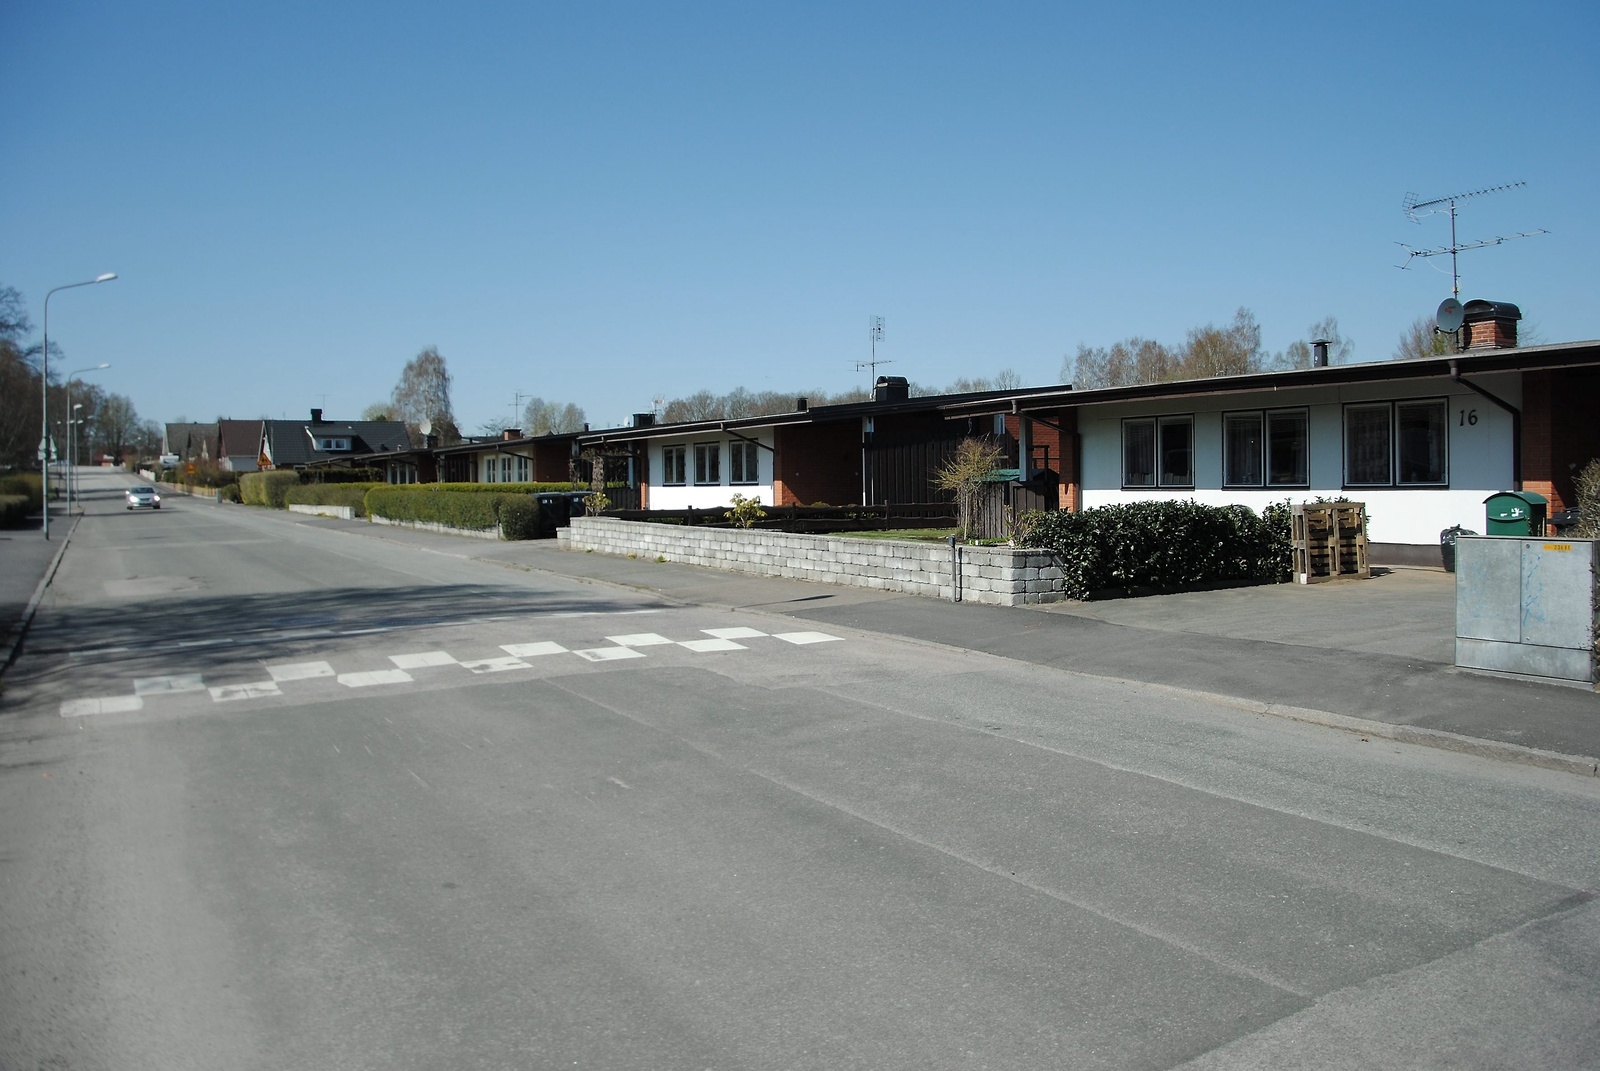 En för Hässleholm unik husmiljö längs Bågvägen  från skarven 1960-70-tal. - Unikt med 22 (tillsammans med husen på Körsbärsvägen) hus som ser likadana ut, säger Kenny Hansson (M) som är ordförande för miljö-och stadsbyggnadsnämnden.